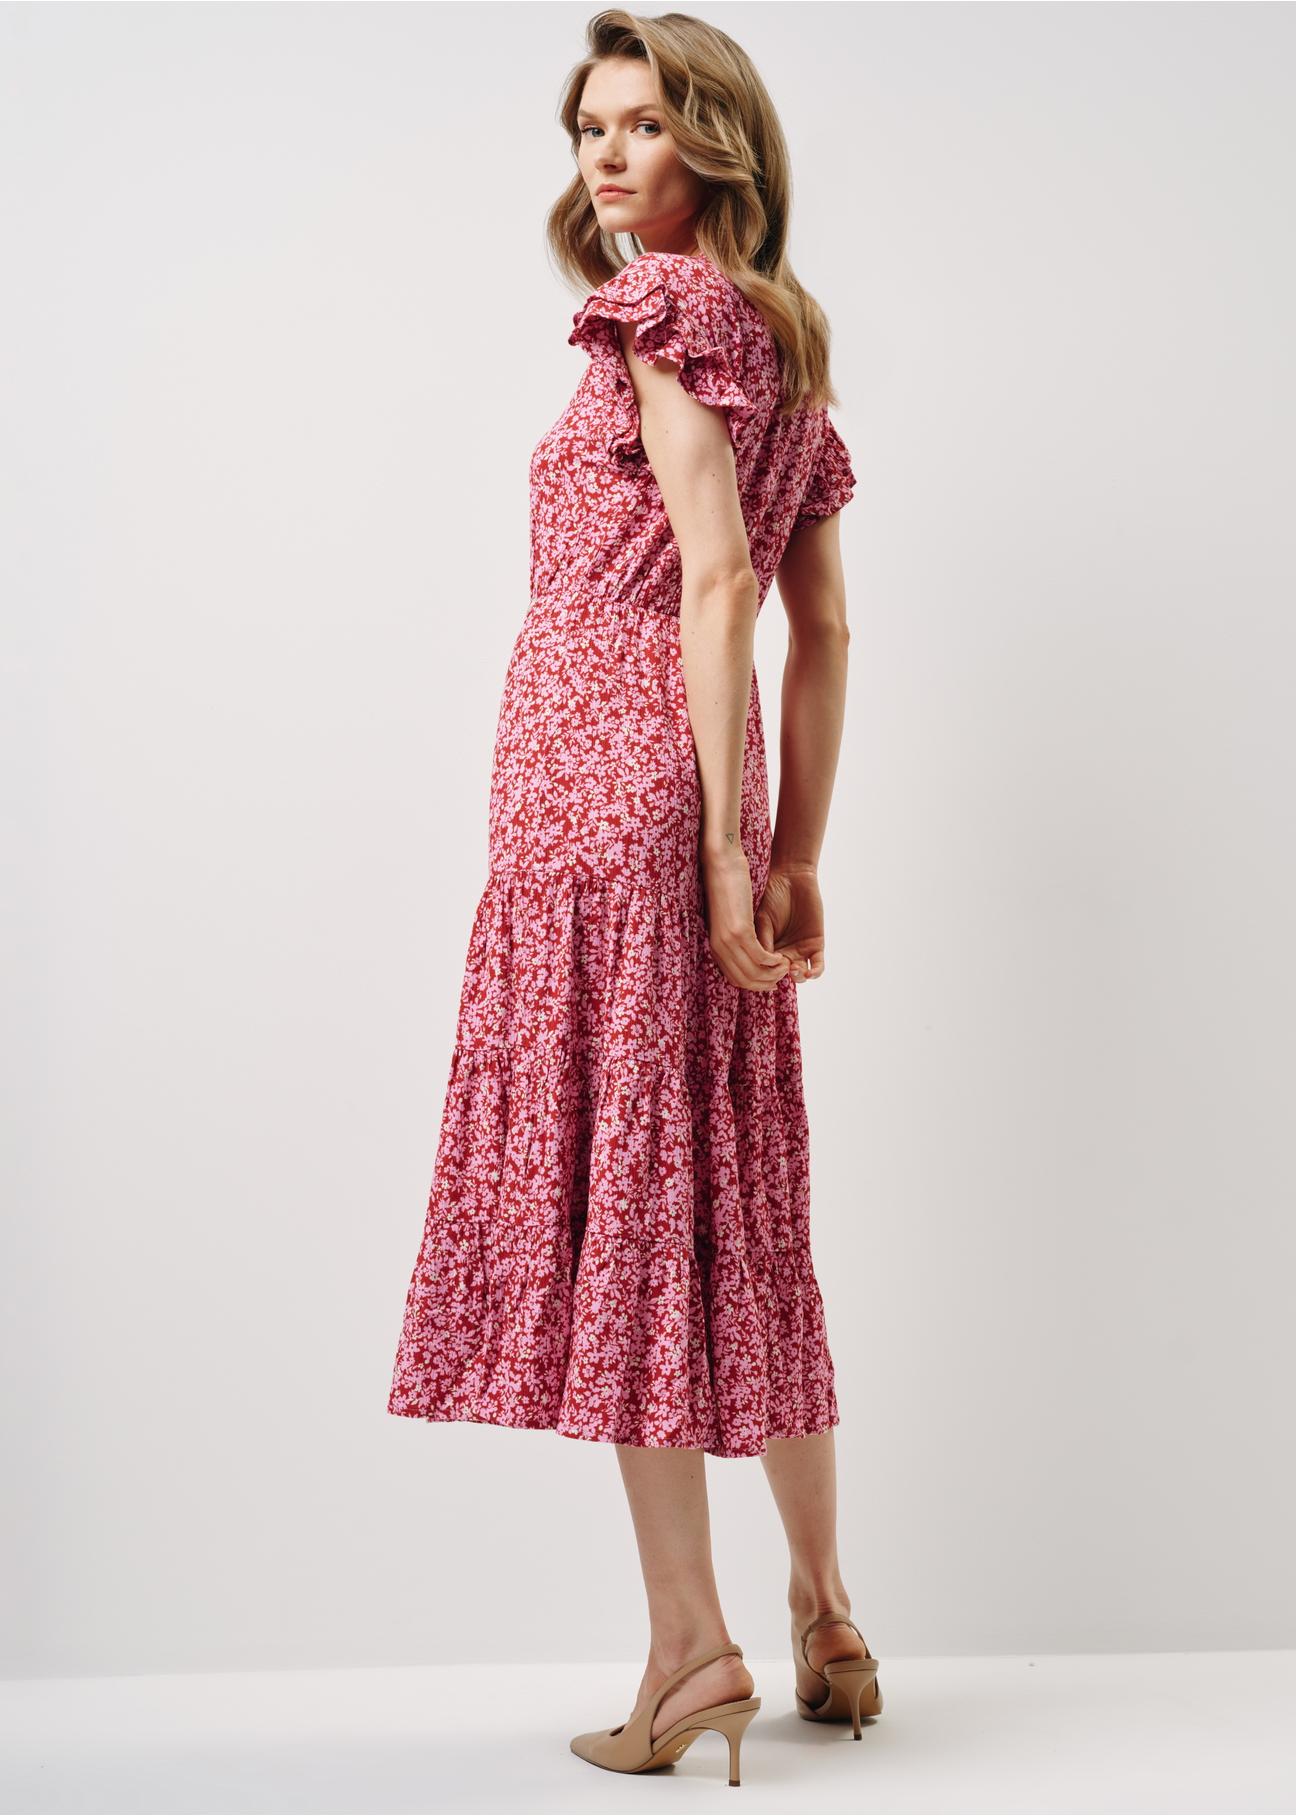 Długa czerwona sukienka w kwiatowy wzór SUKDT-0187-42(W24)